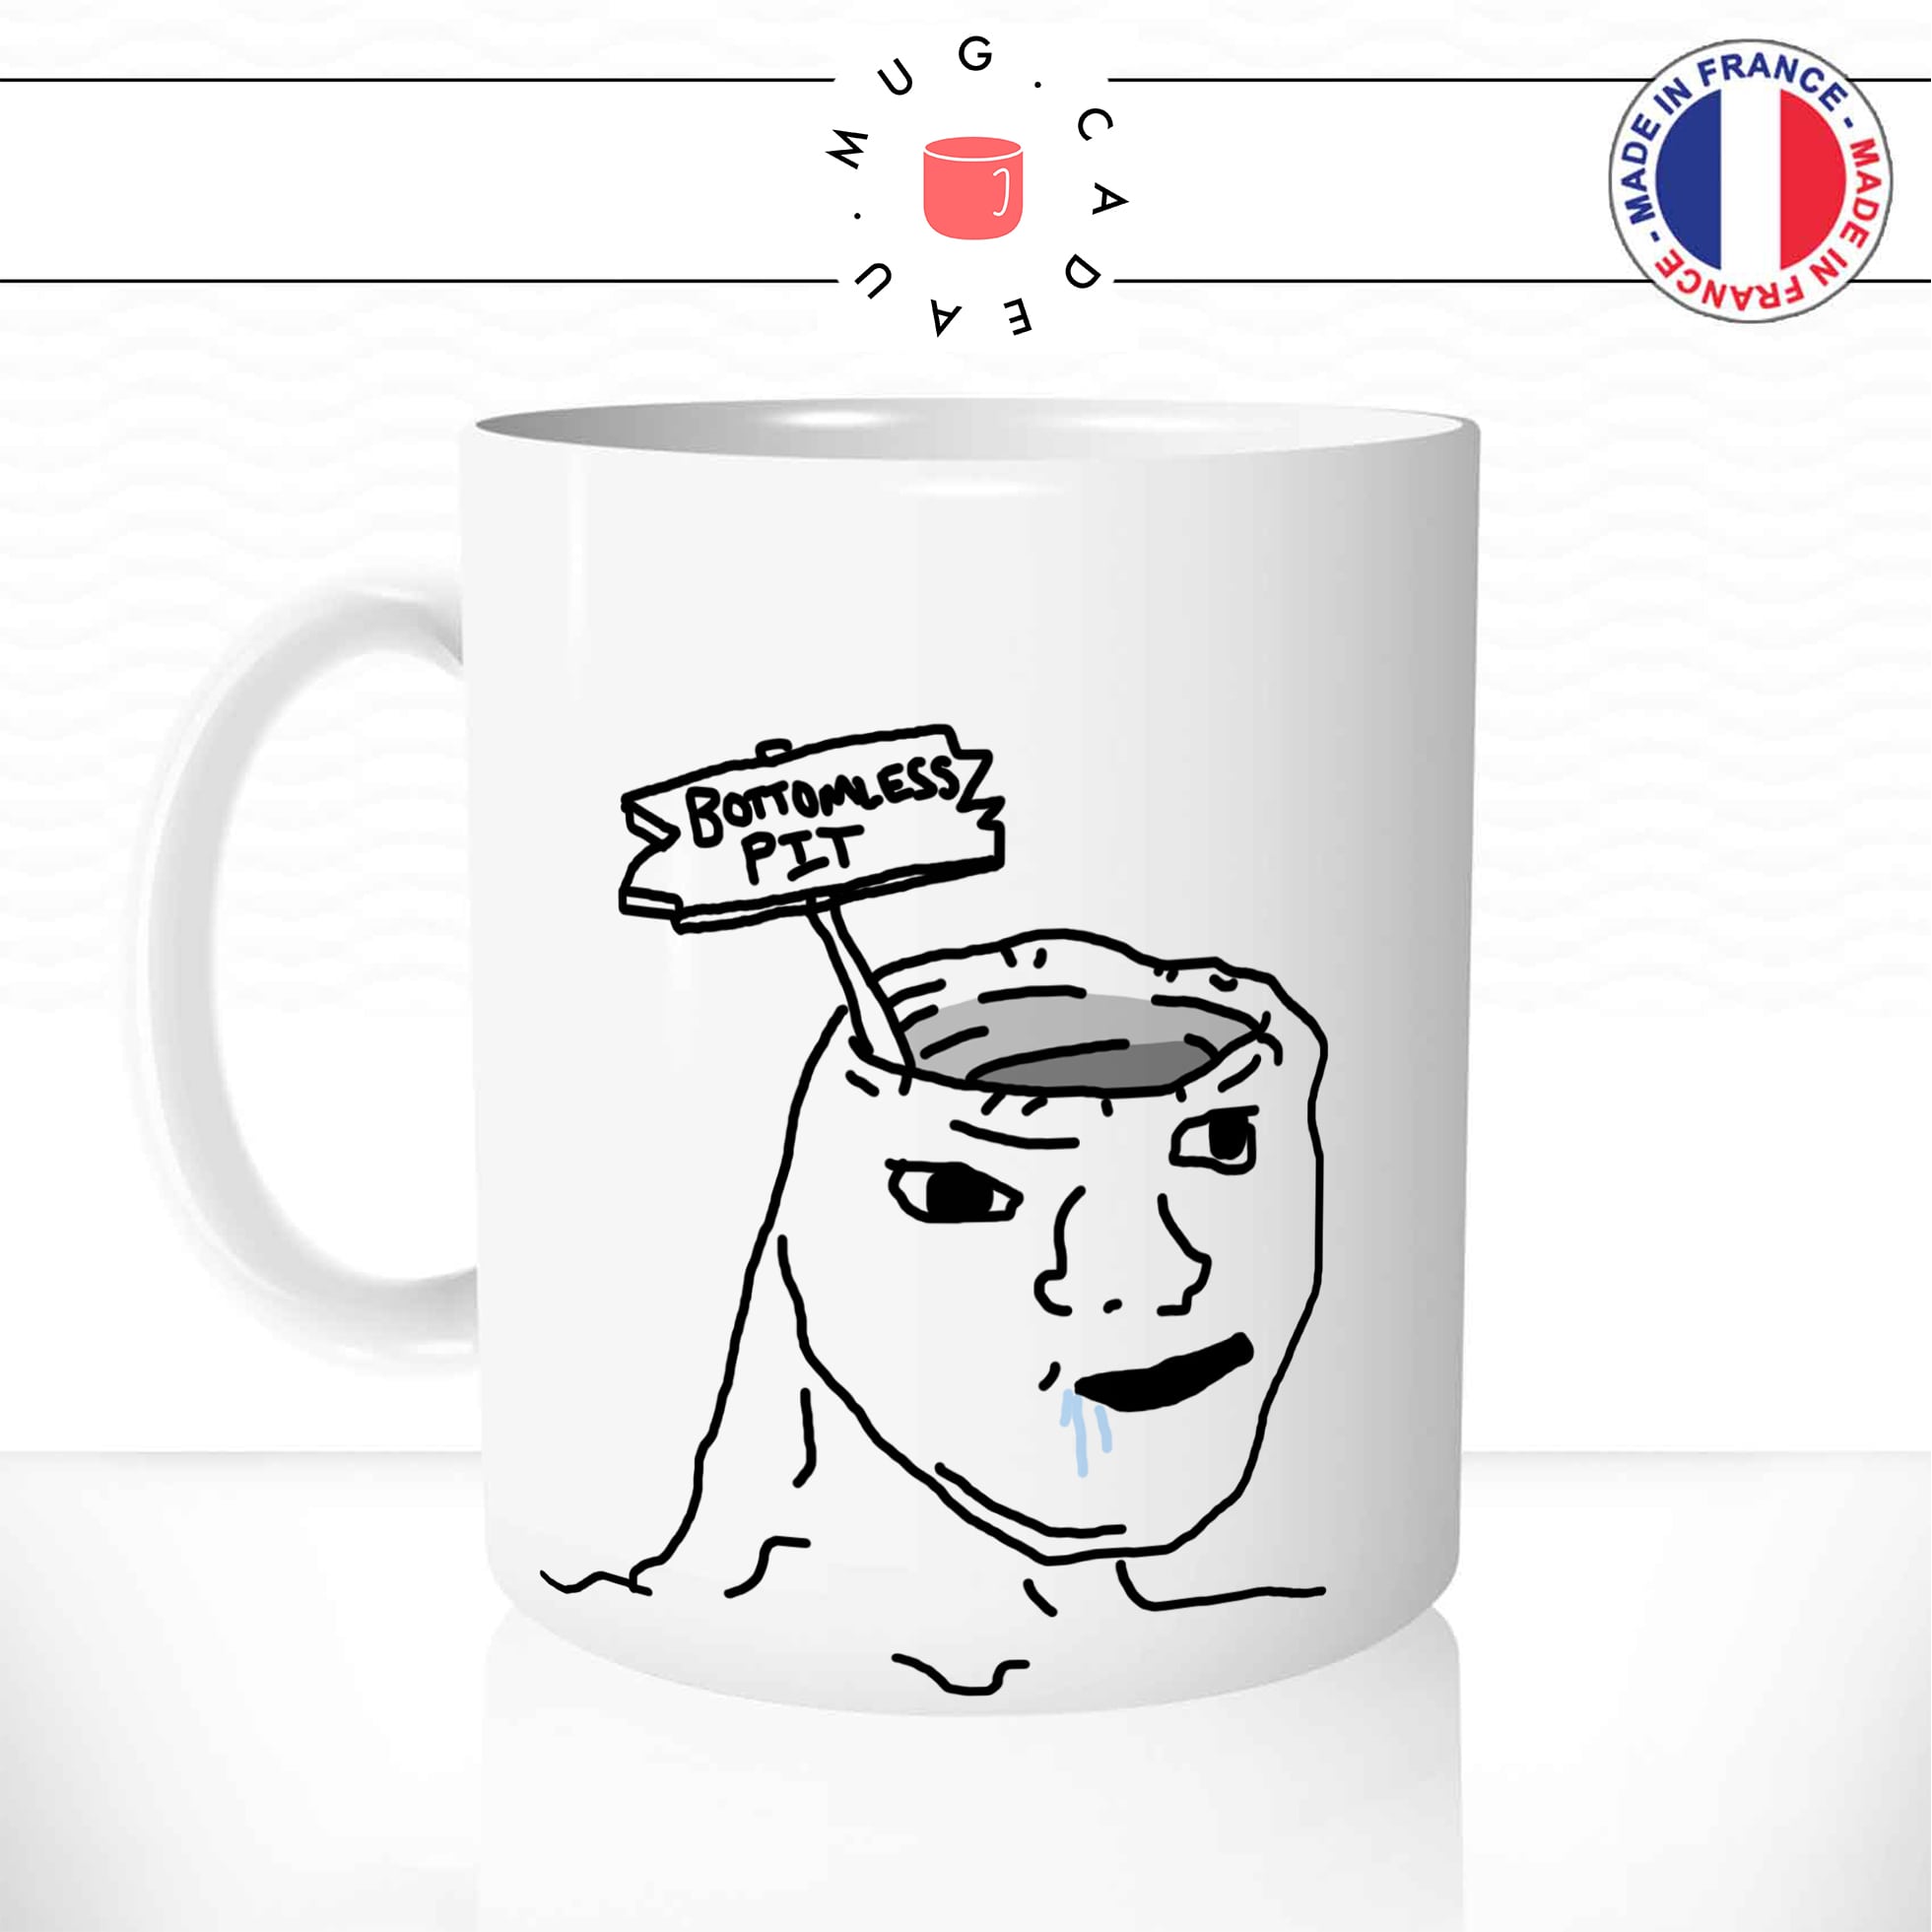 mug-tasse-bottomless-pit-meme-internet-geek-drole-débile-bete-bave-dessin-moche-fun-café-thé-idée-cadeau-originale-personnalisée-min